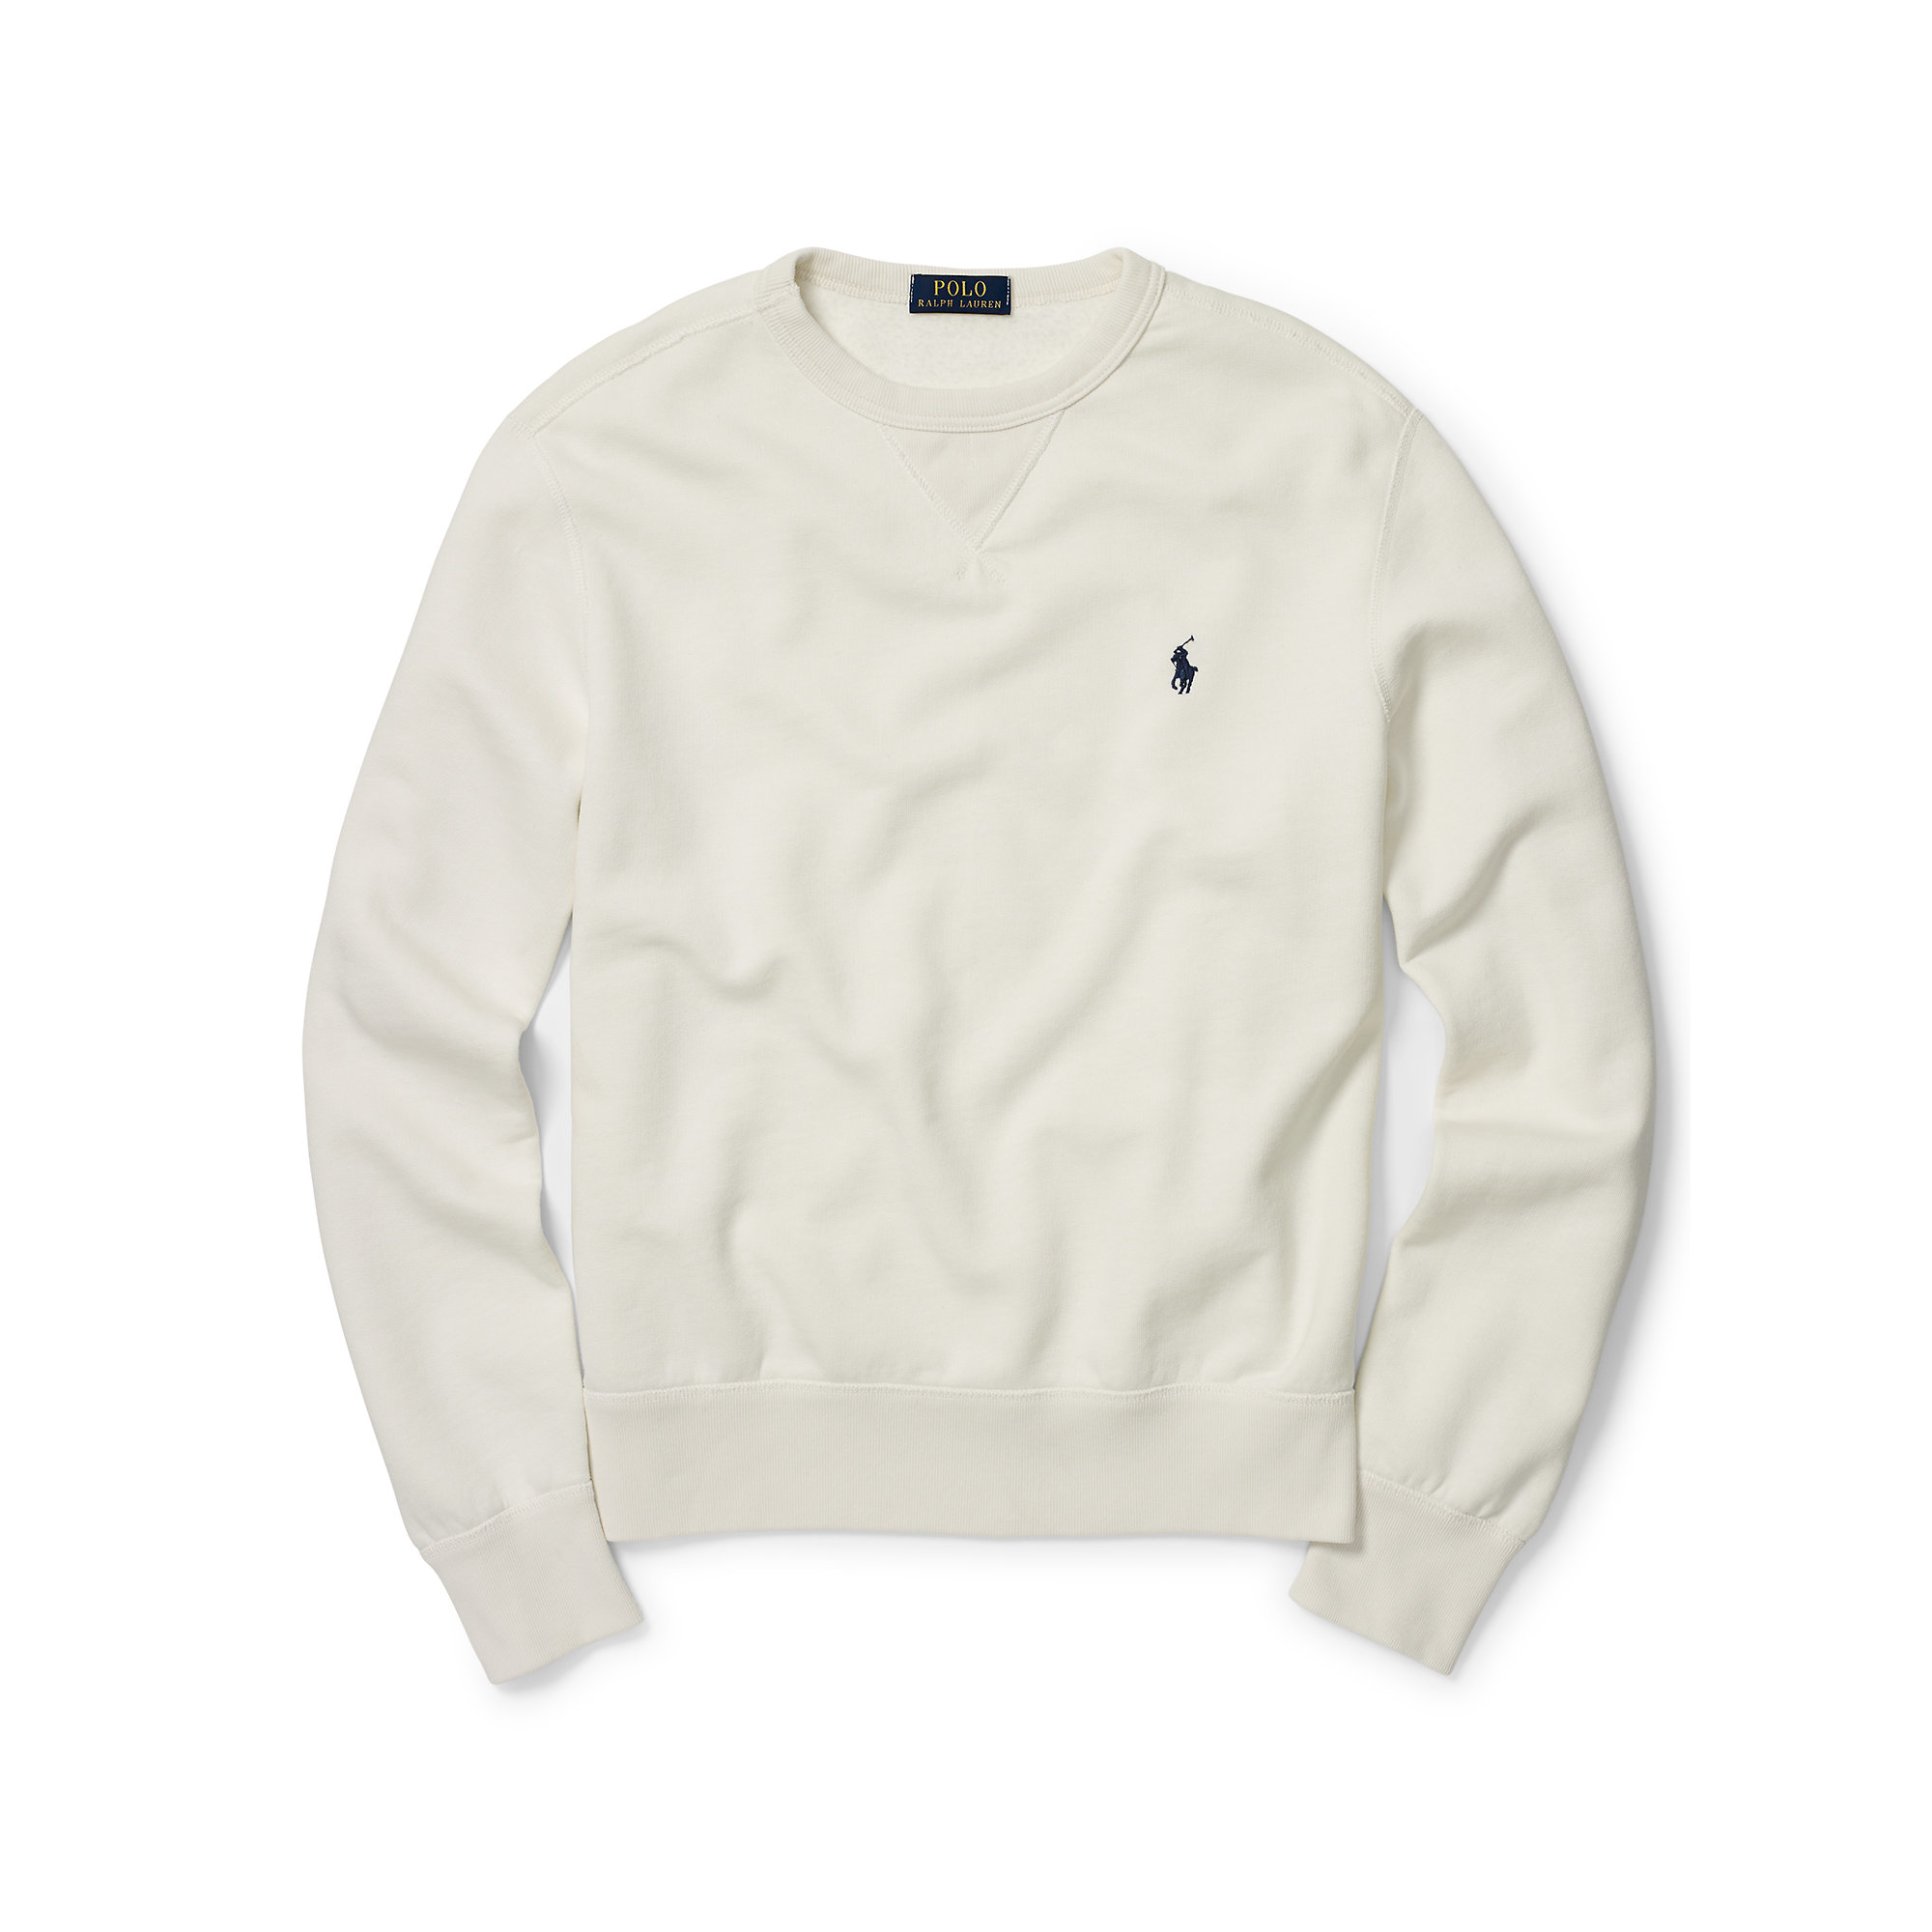 polo fleece sweatshirt